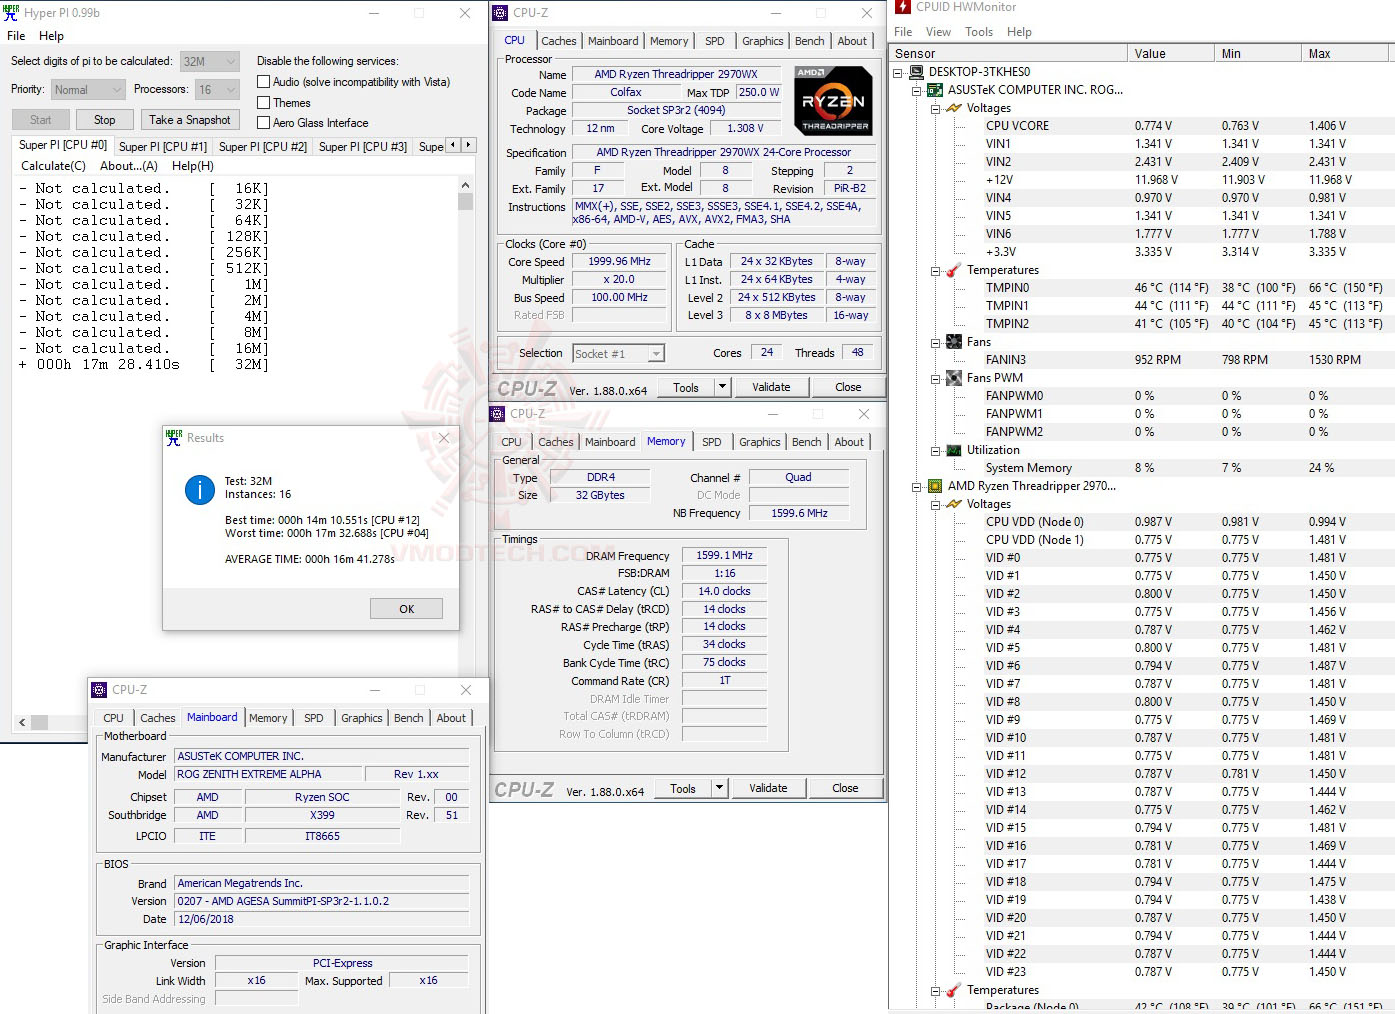 h32 AMD RYZEN THREADRIPPER 2970WX PROCESSOR REVIEW